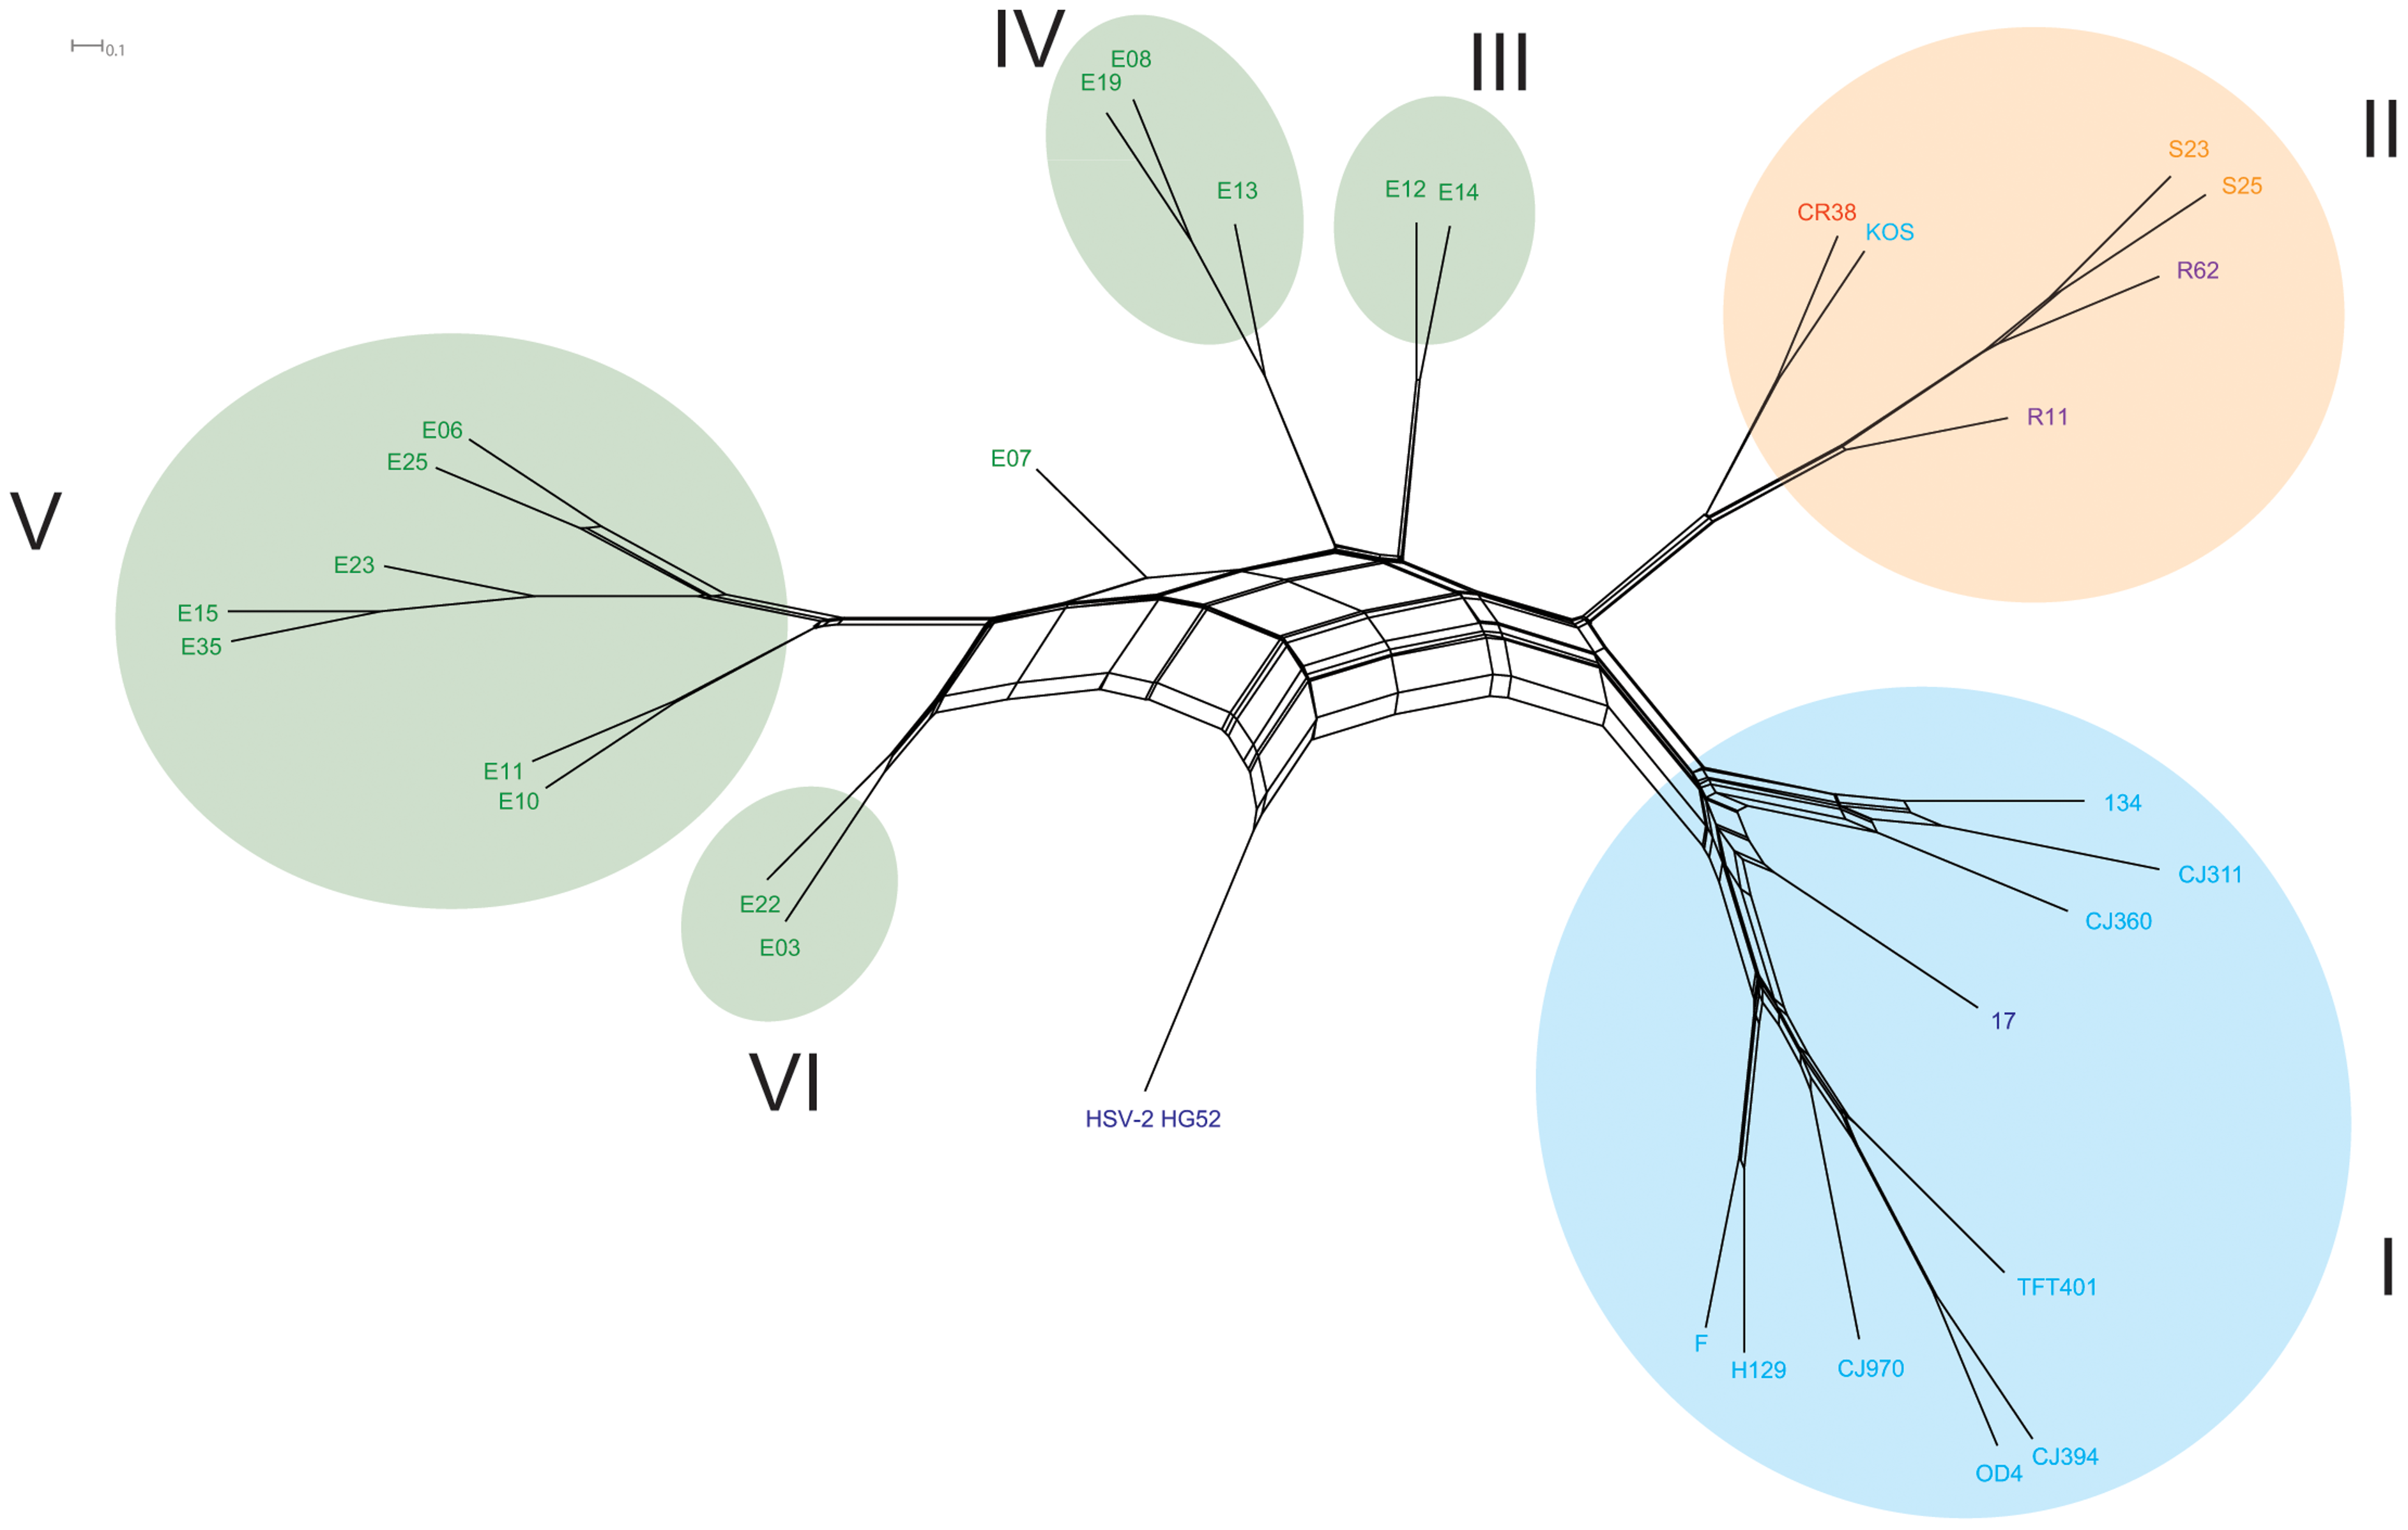 Árbol de secuencias consenso construido de una partición de 5kb del genoma del virus examinado mediante un análisis boostrap de  máxima similitud con 500 repeticiones. Un consenso del 70% se usó como valor umbral para realizar las agrupaciones. El clado I corresponde a poblaciones norteamericanas y europeas , el clado II americanas y del asía oriental y los clados IIIV  V y VI son de áfrica del éste. HSPV-2  se utilizó como grupo comparativo de afuera, tomado de @kolb2013using